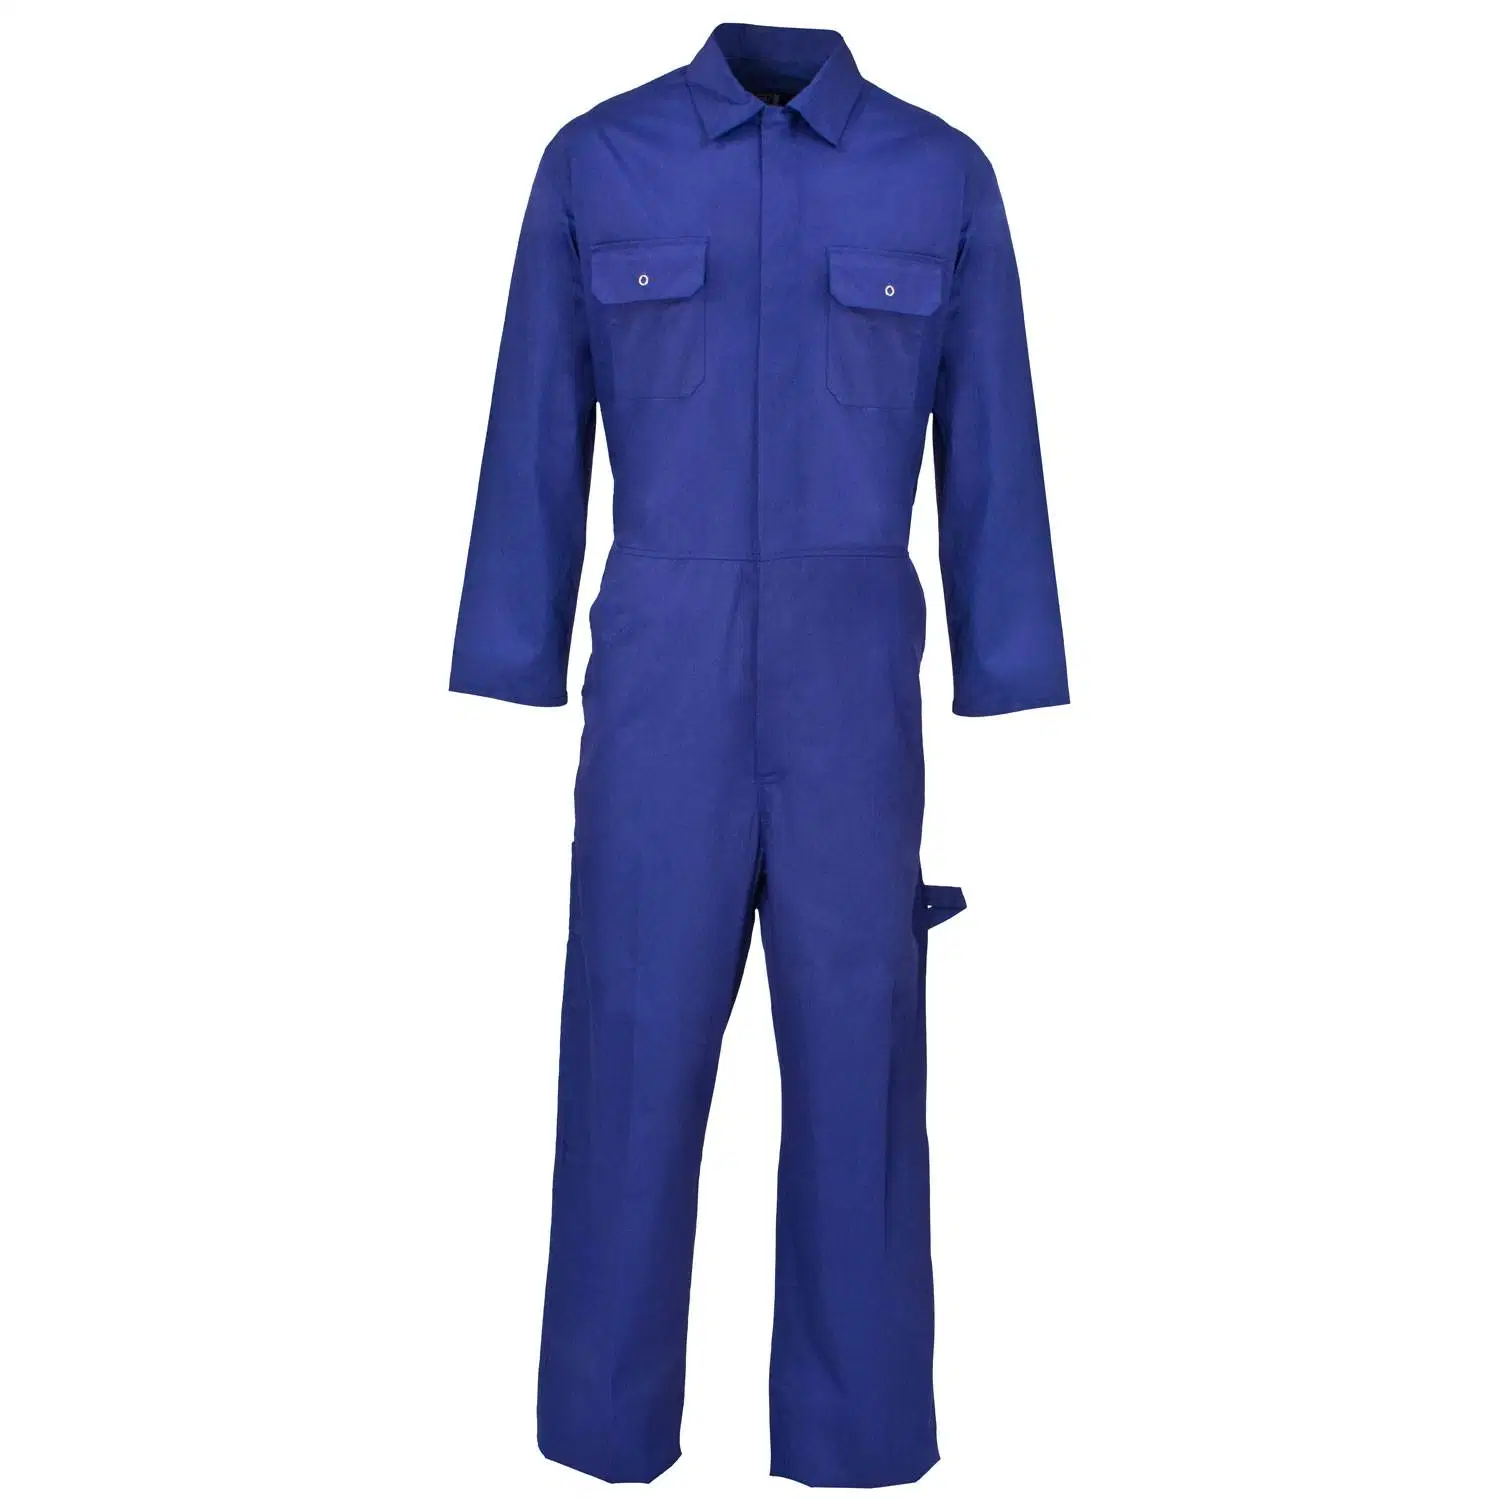 السلامة من ارتداء العمل الآمن على سلامة العمل وسلامة بدلة العمل الخاصة بالبوليستر الأزرق موحد